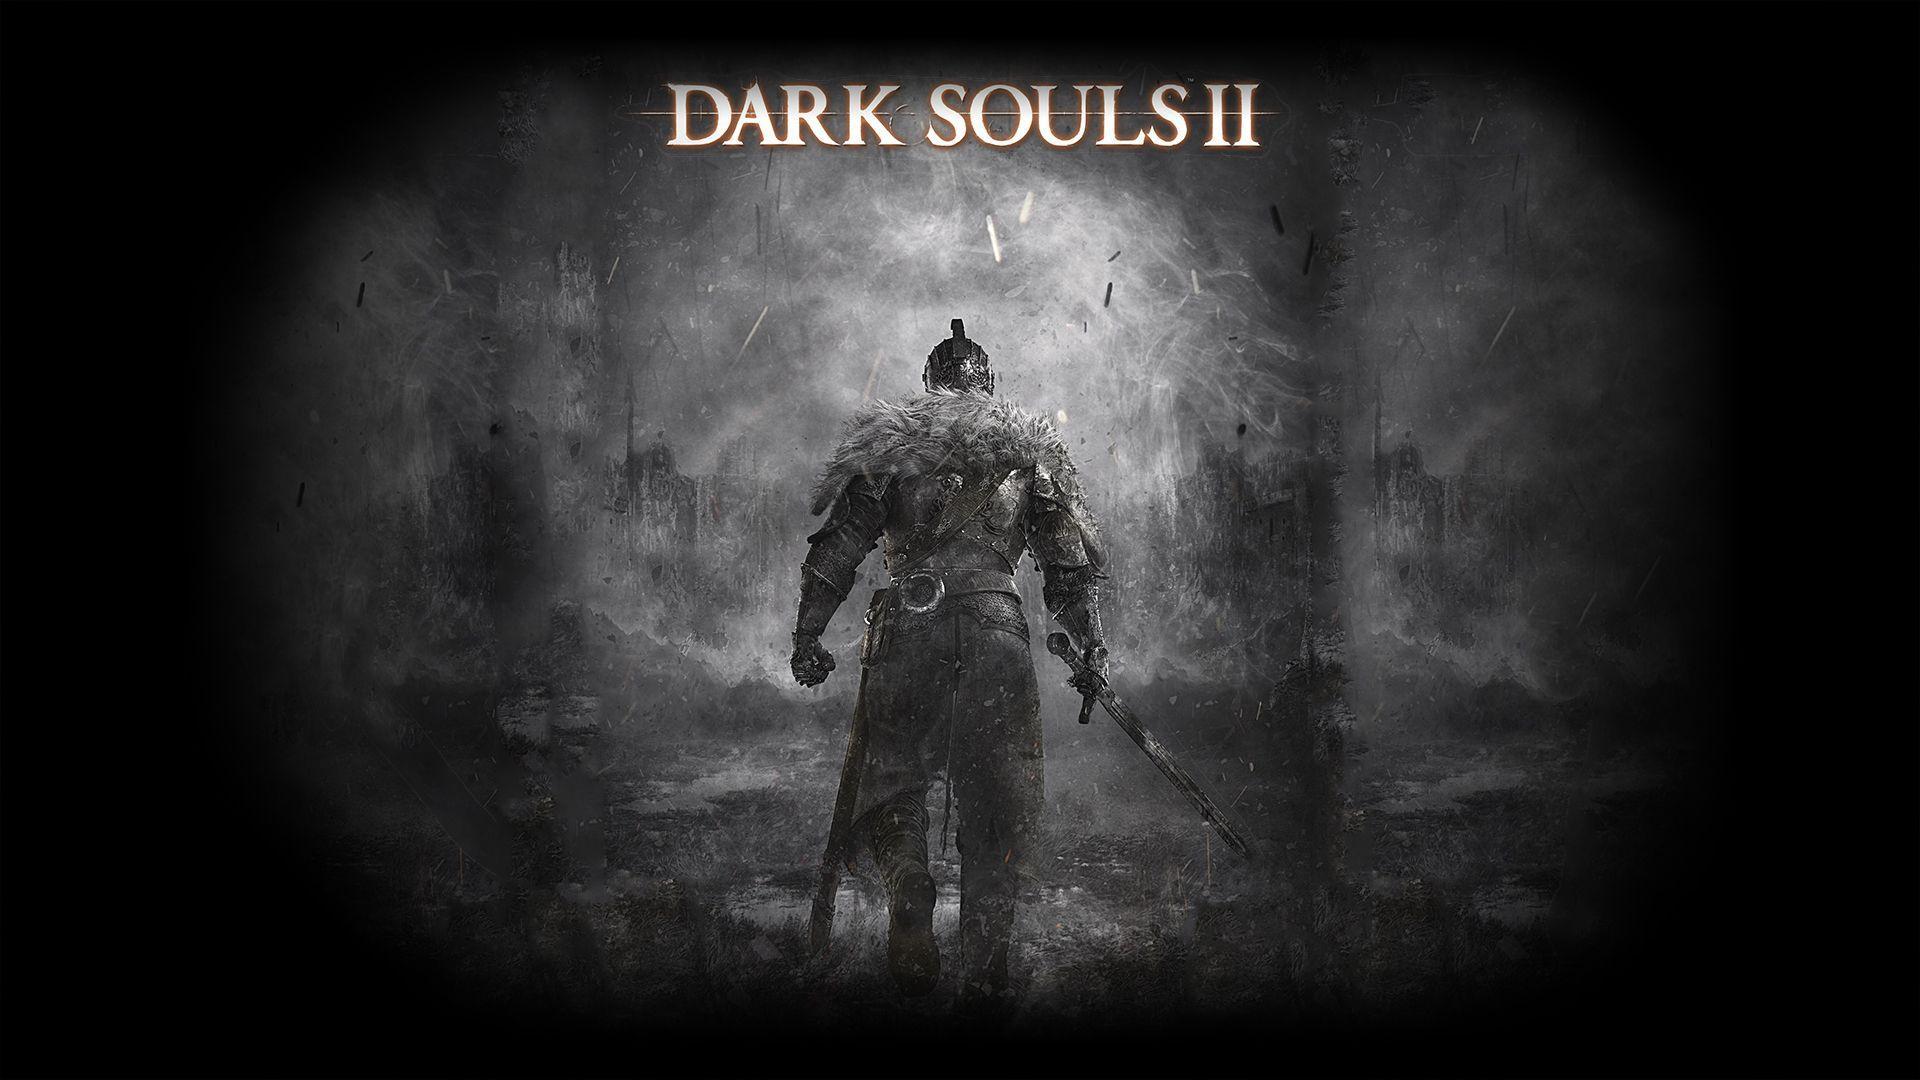 Dark Souls II Wallpapers - Wallpaper Cave